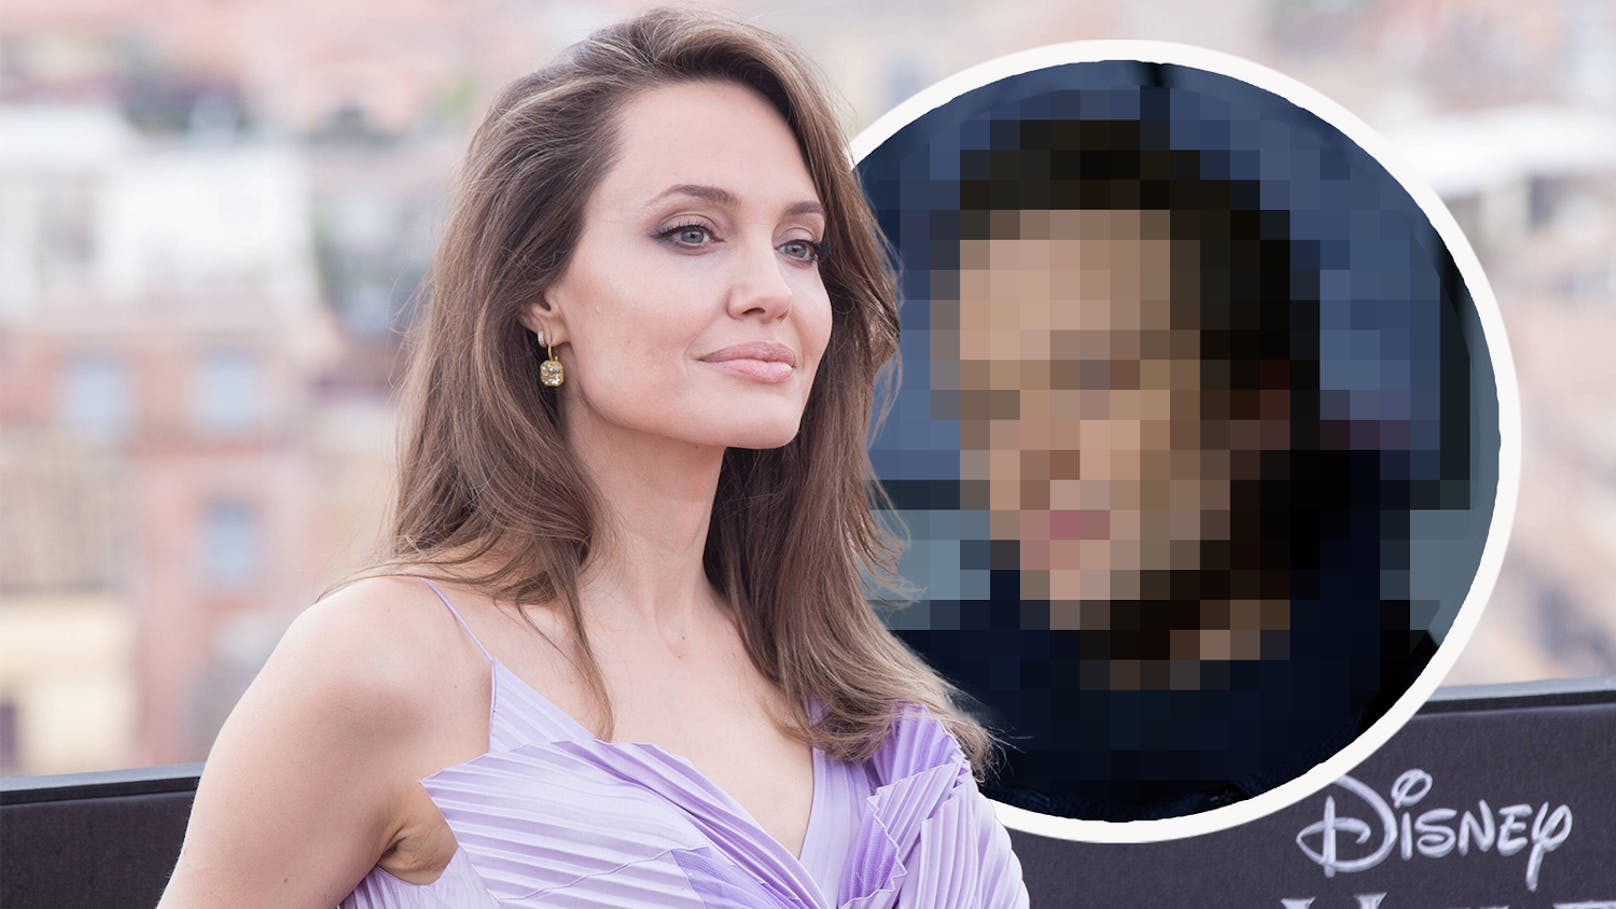 Neue Liebe? Angelina Jolie soll deutschen Promi daten